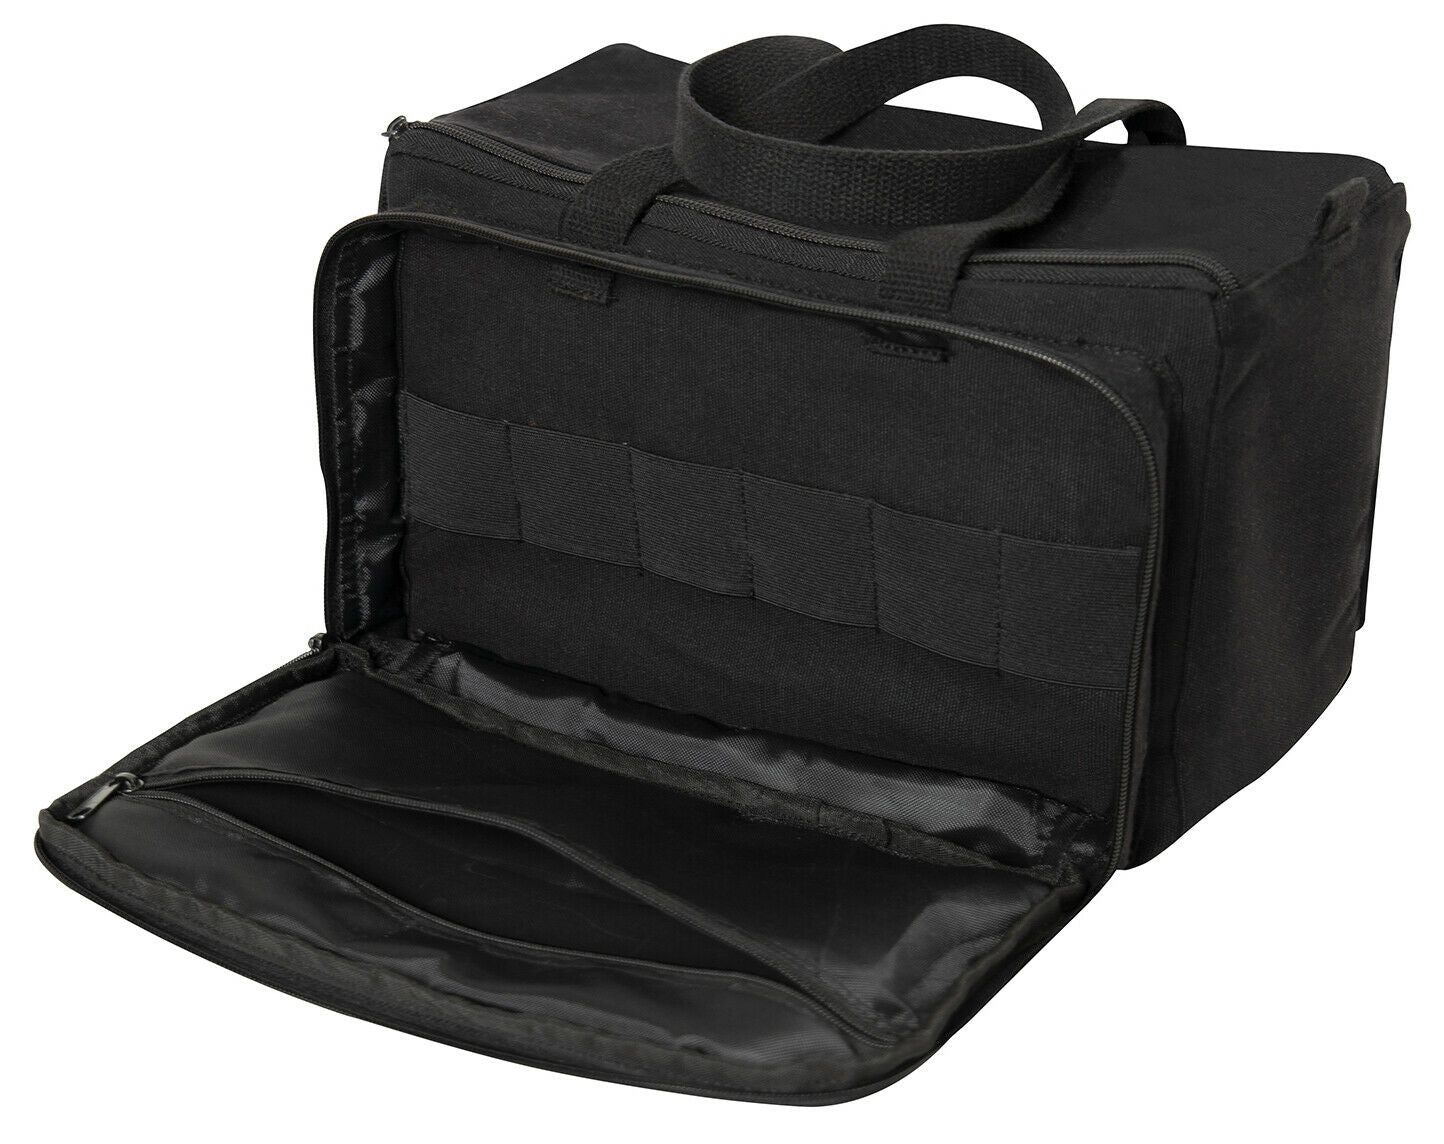 Rothco Canvas Tactical Shooting Range Bag - Black